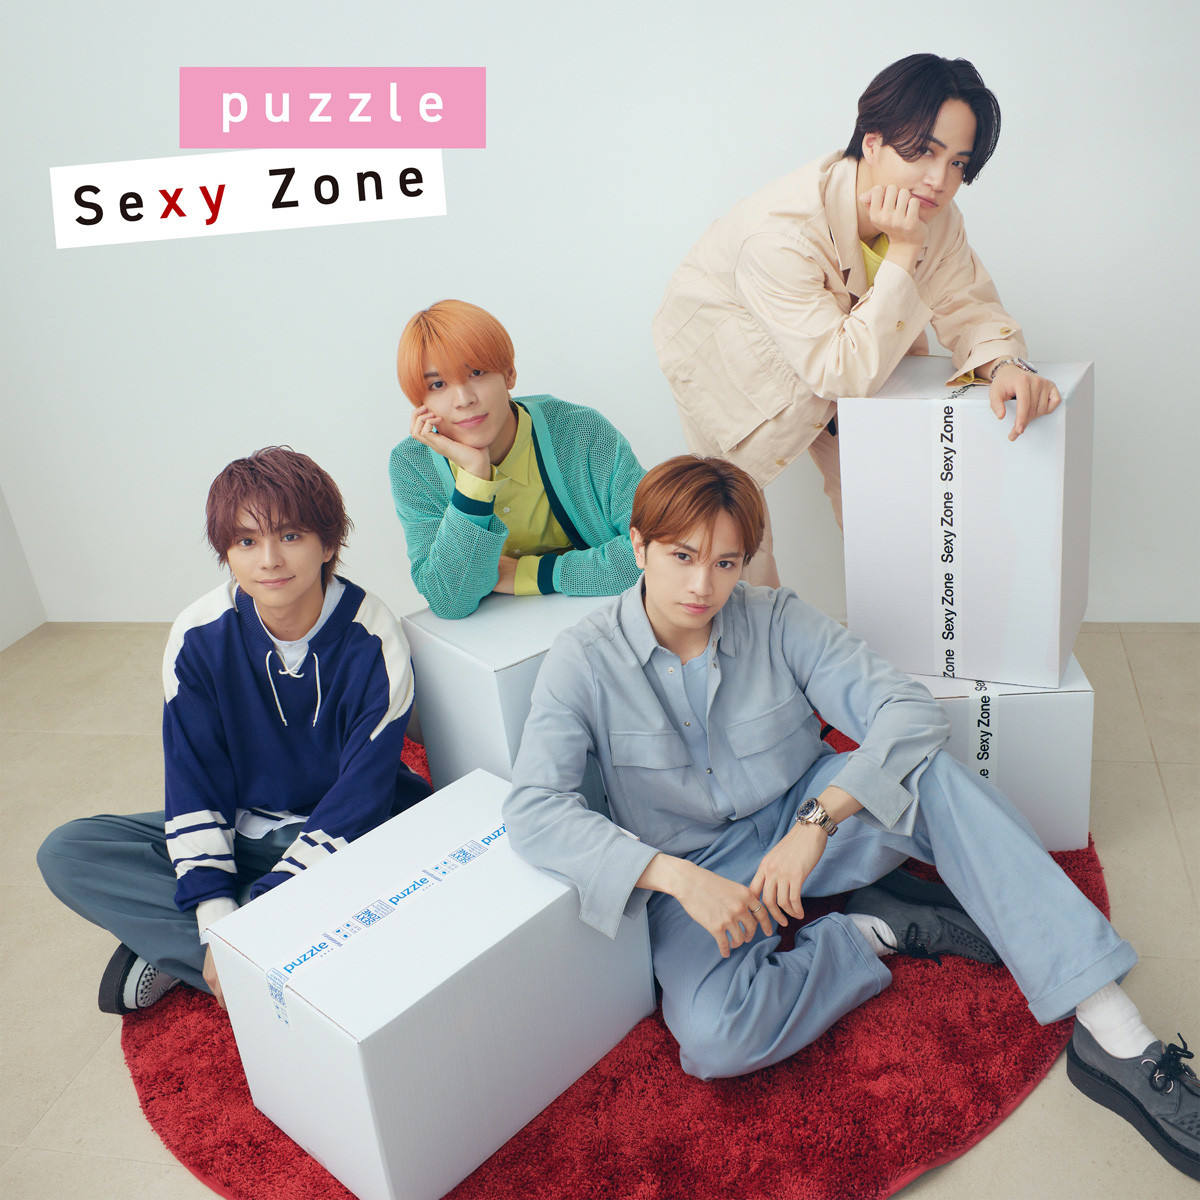 3/18付週間シングルランキング、1位はSexy Zone「puzzle」 | ORICON NEWS